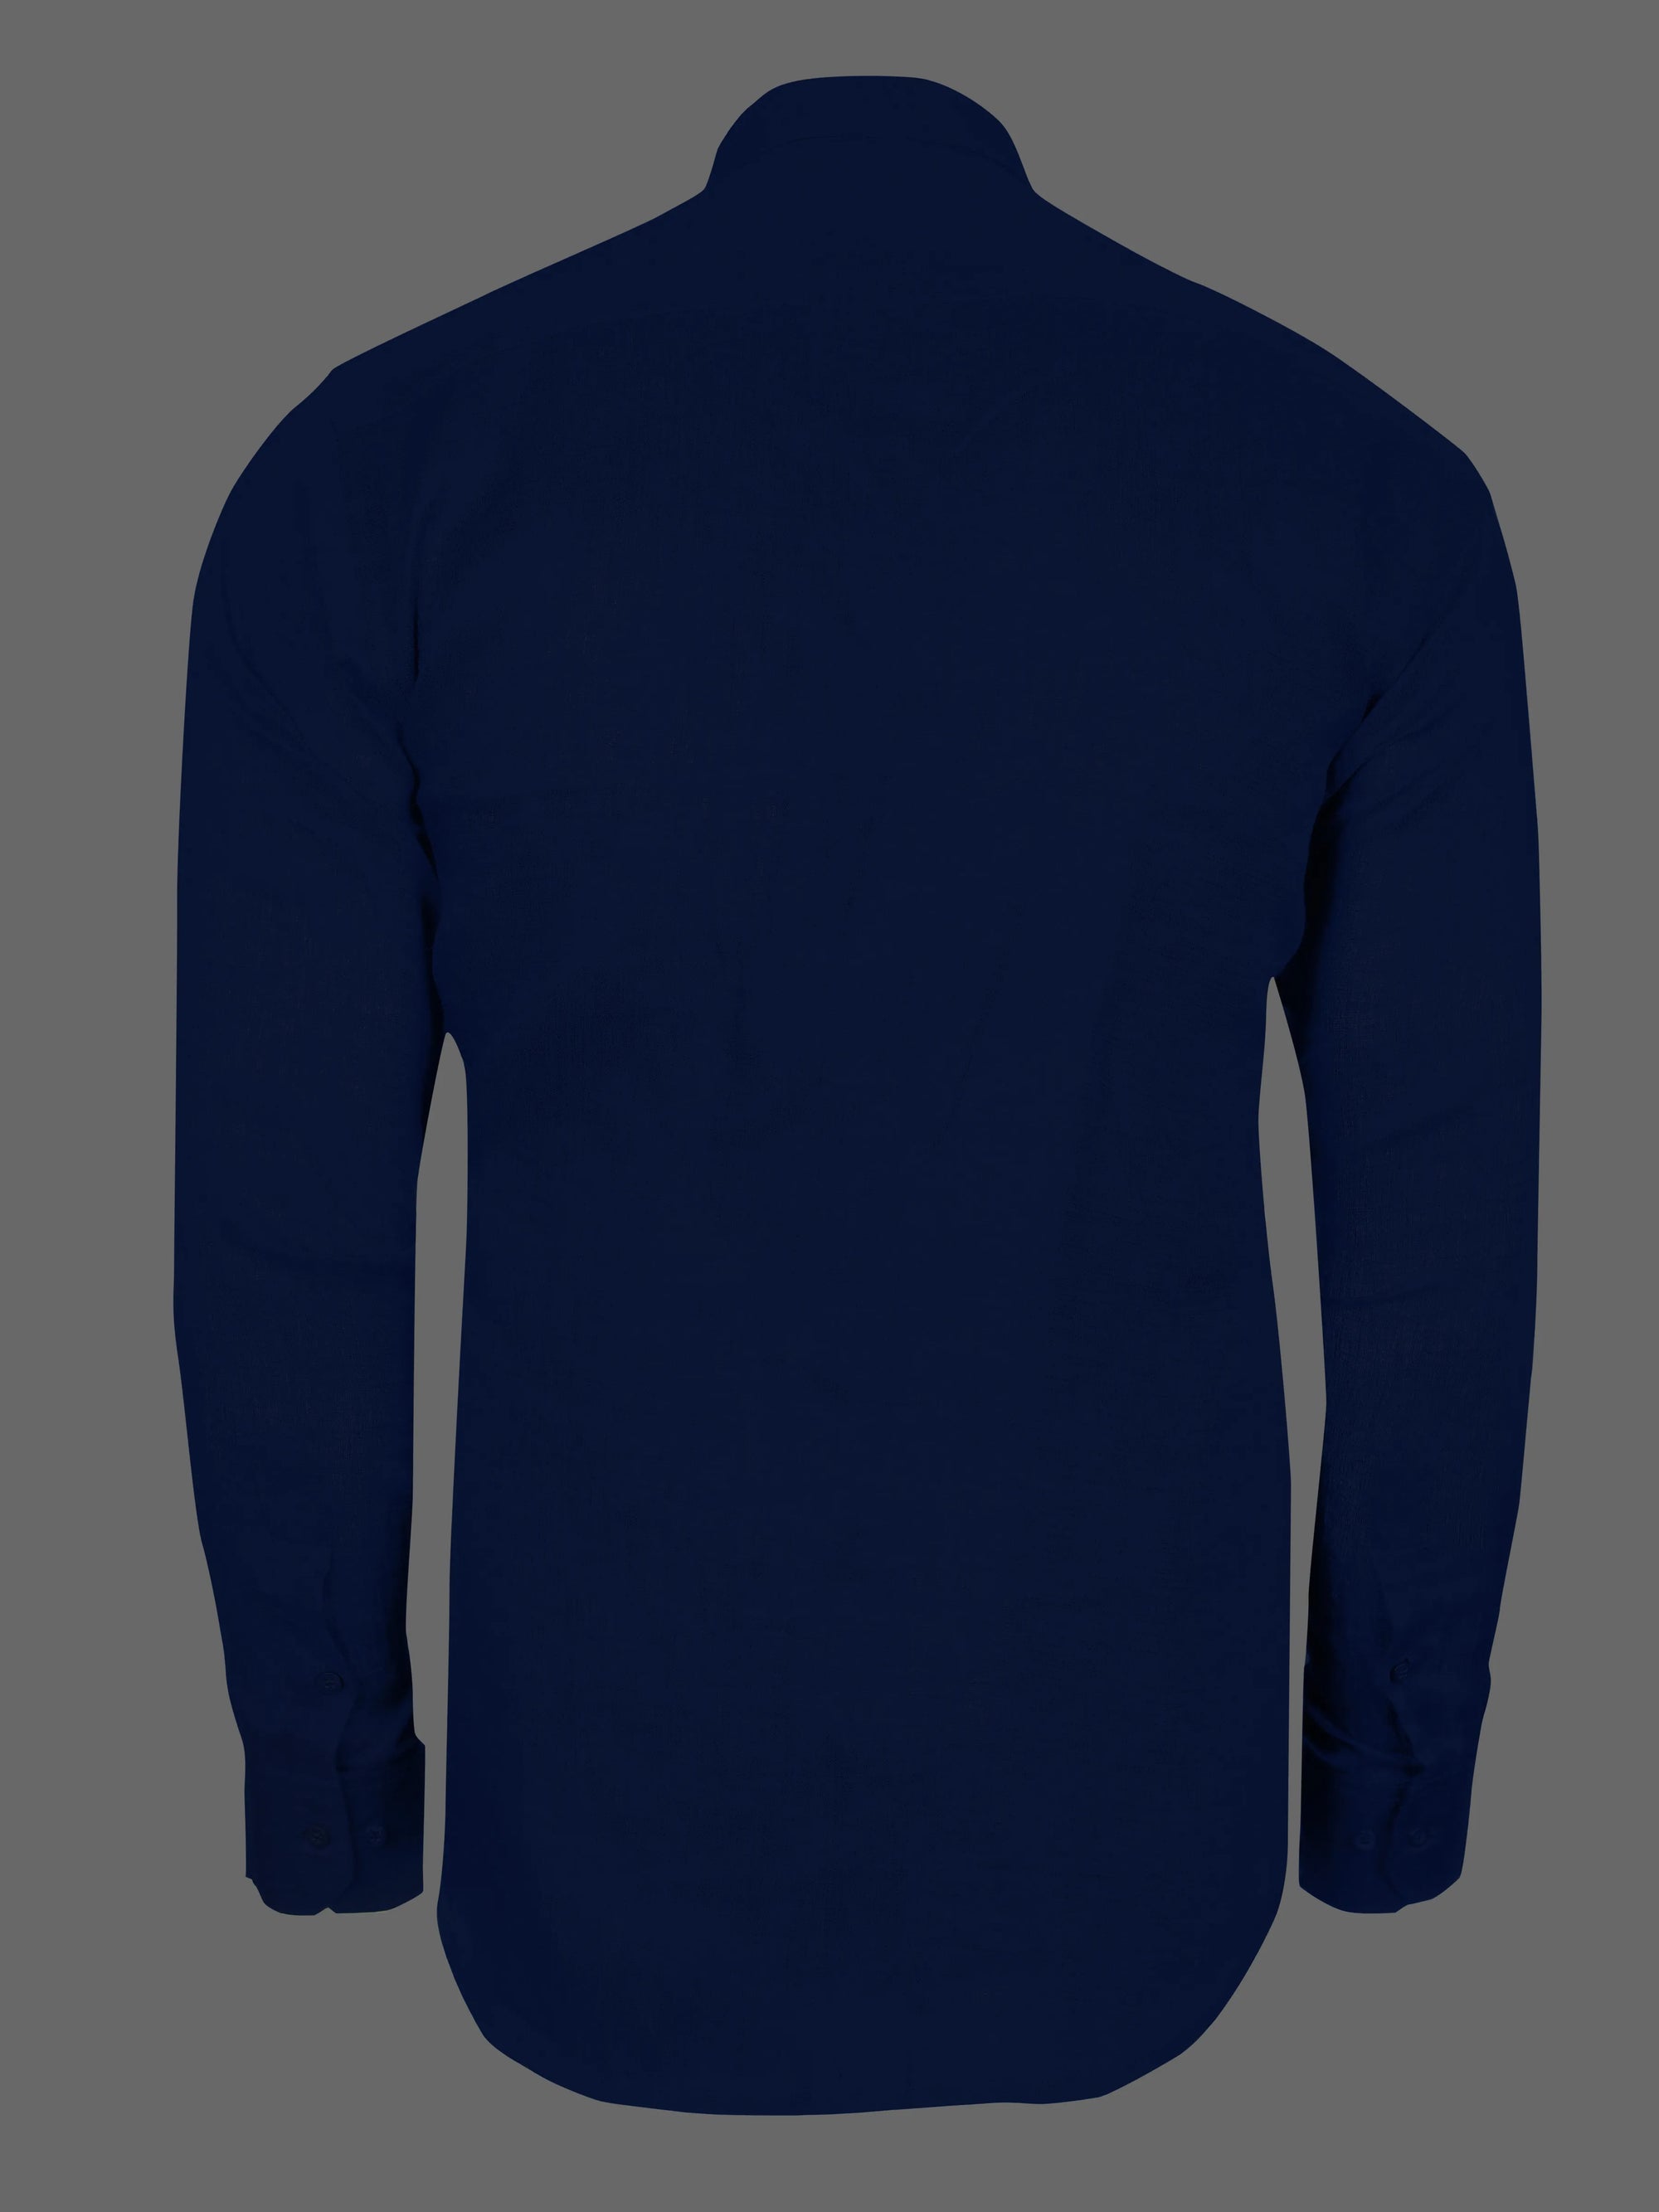 Navy Blue Super Soft Linen Shirt